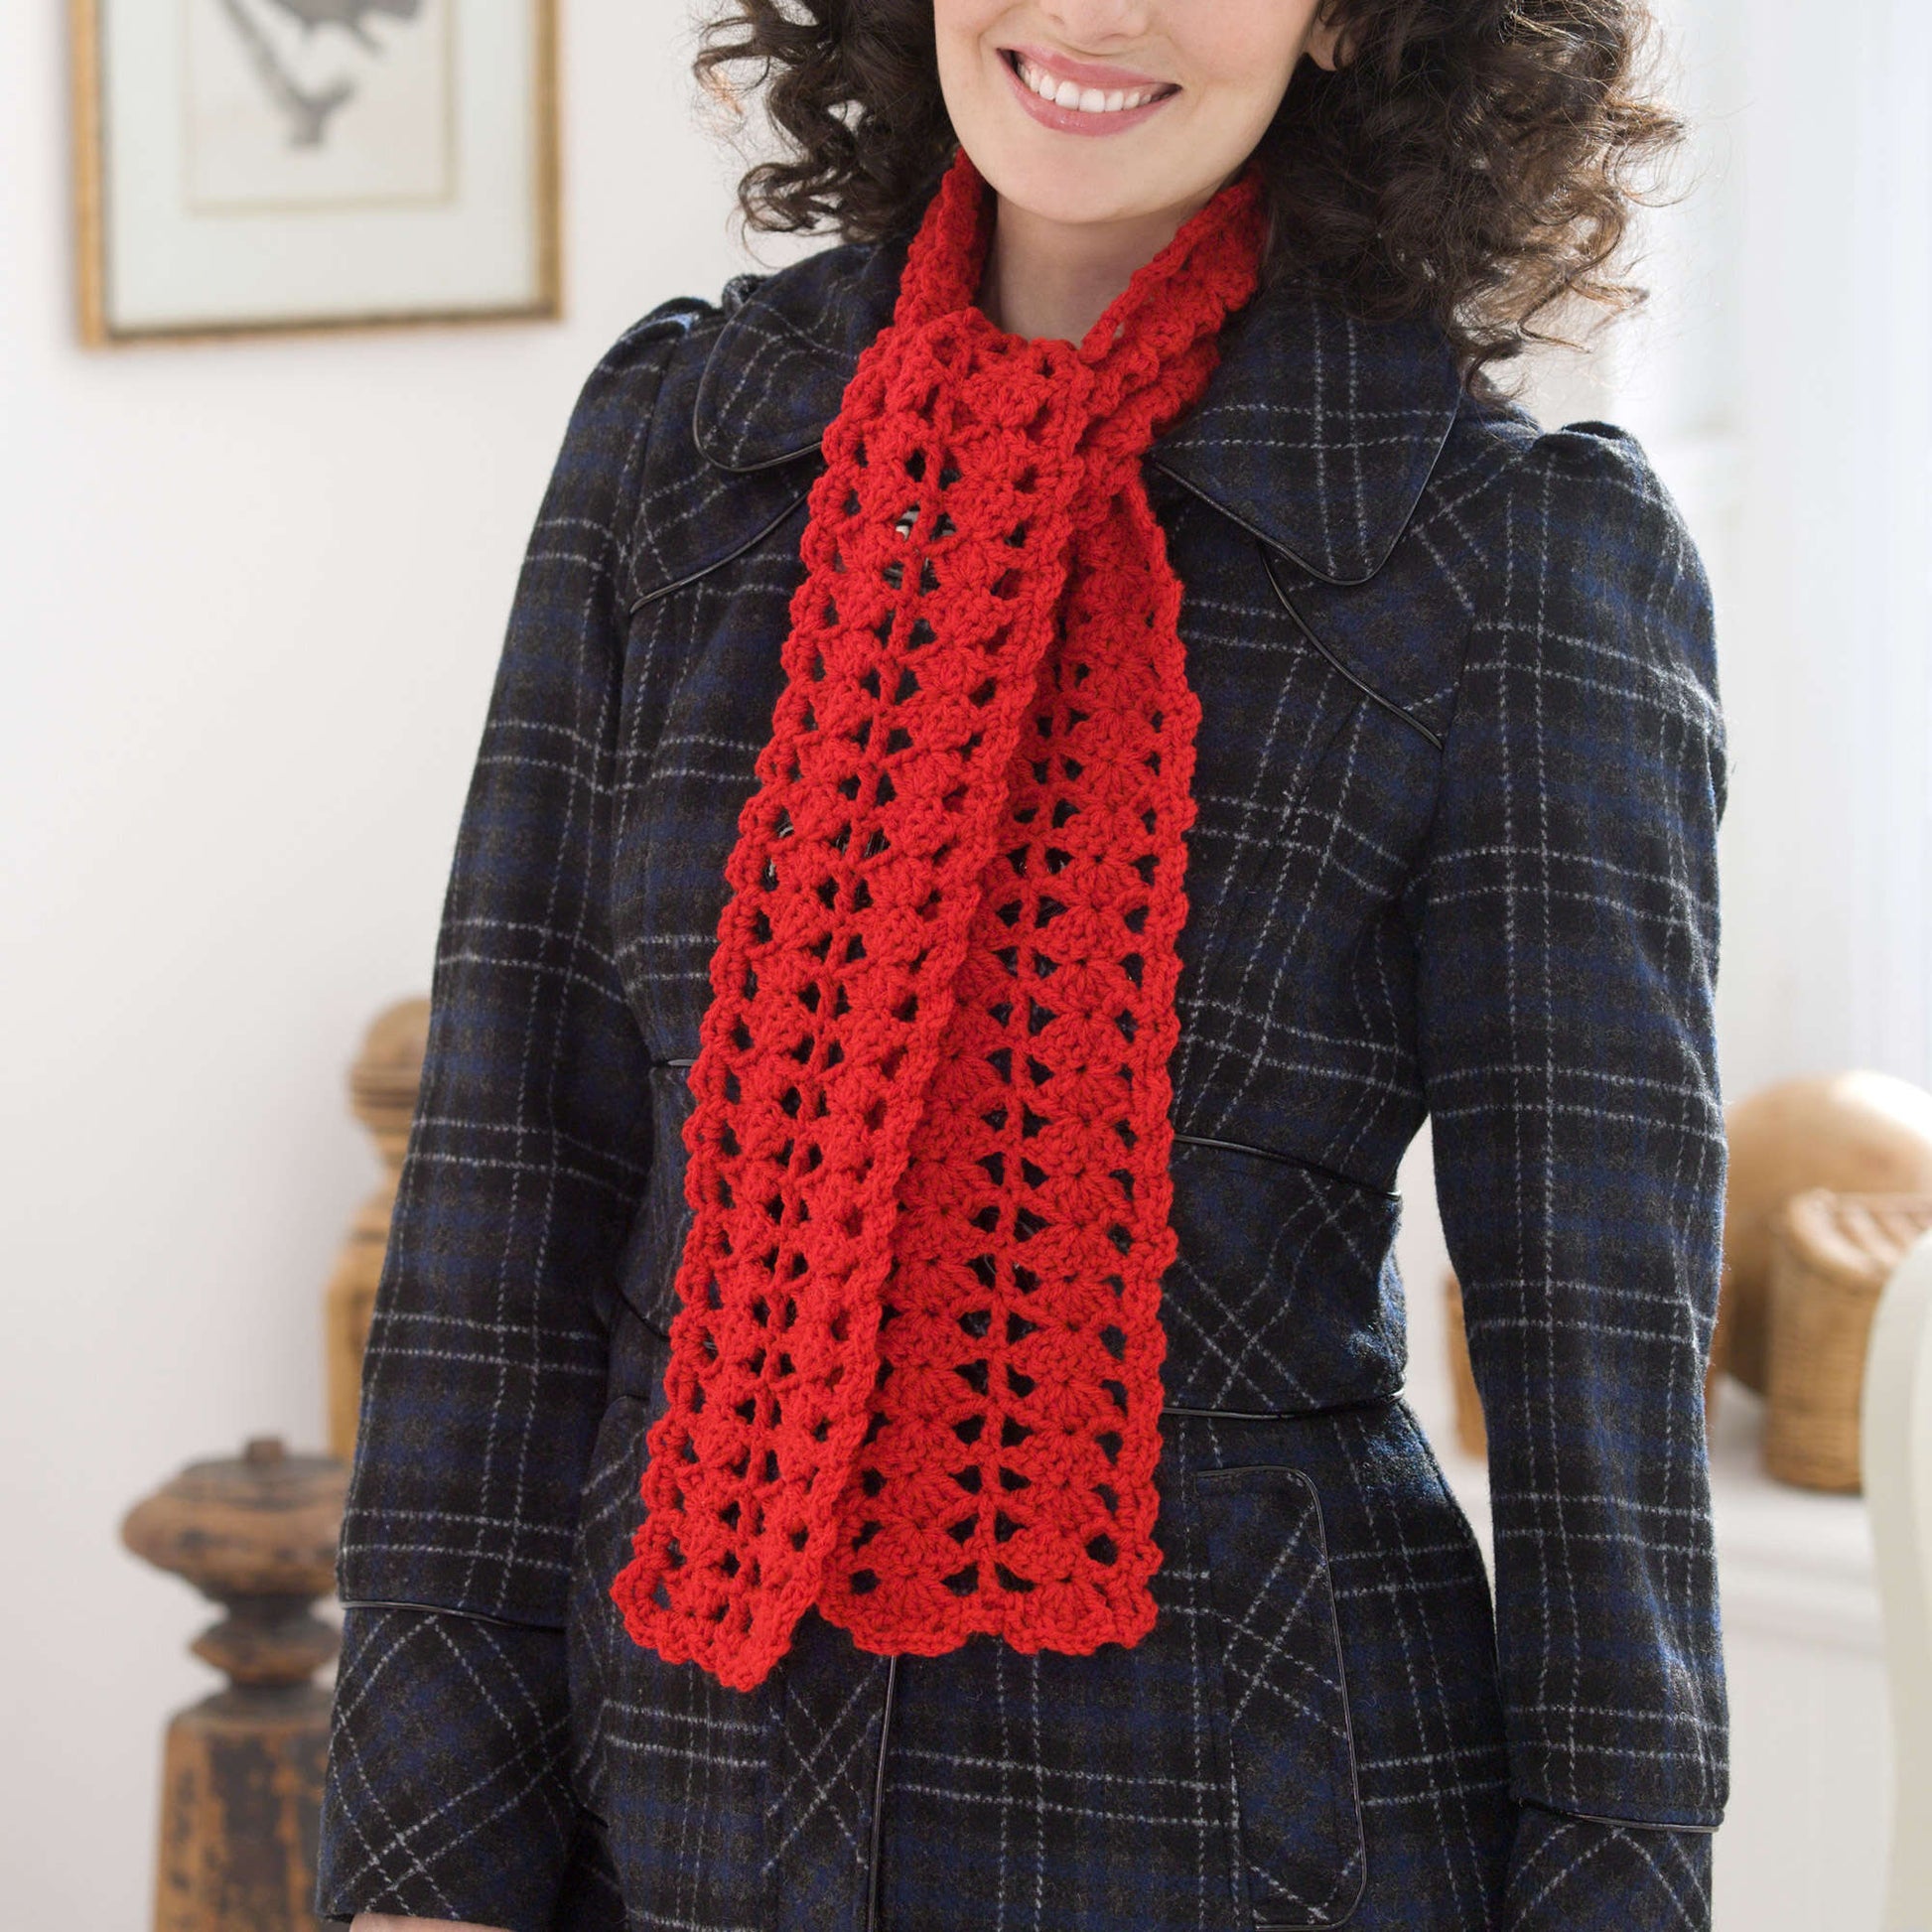 Red Heart Heartwarming Crochet Scarf Pattern